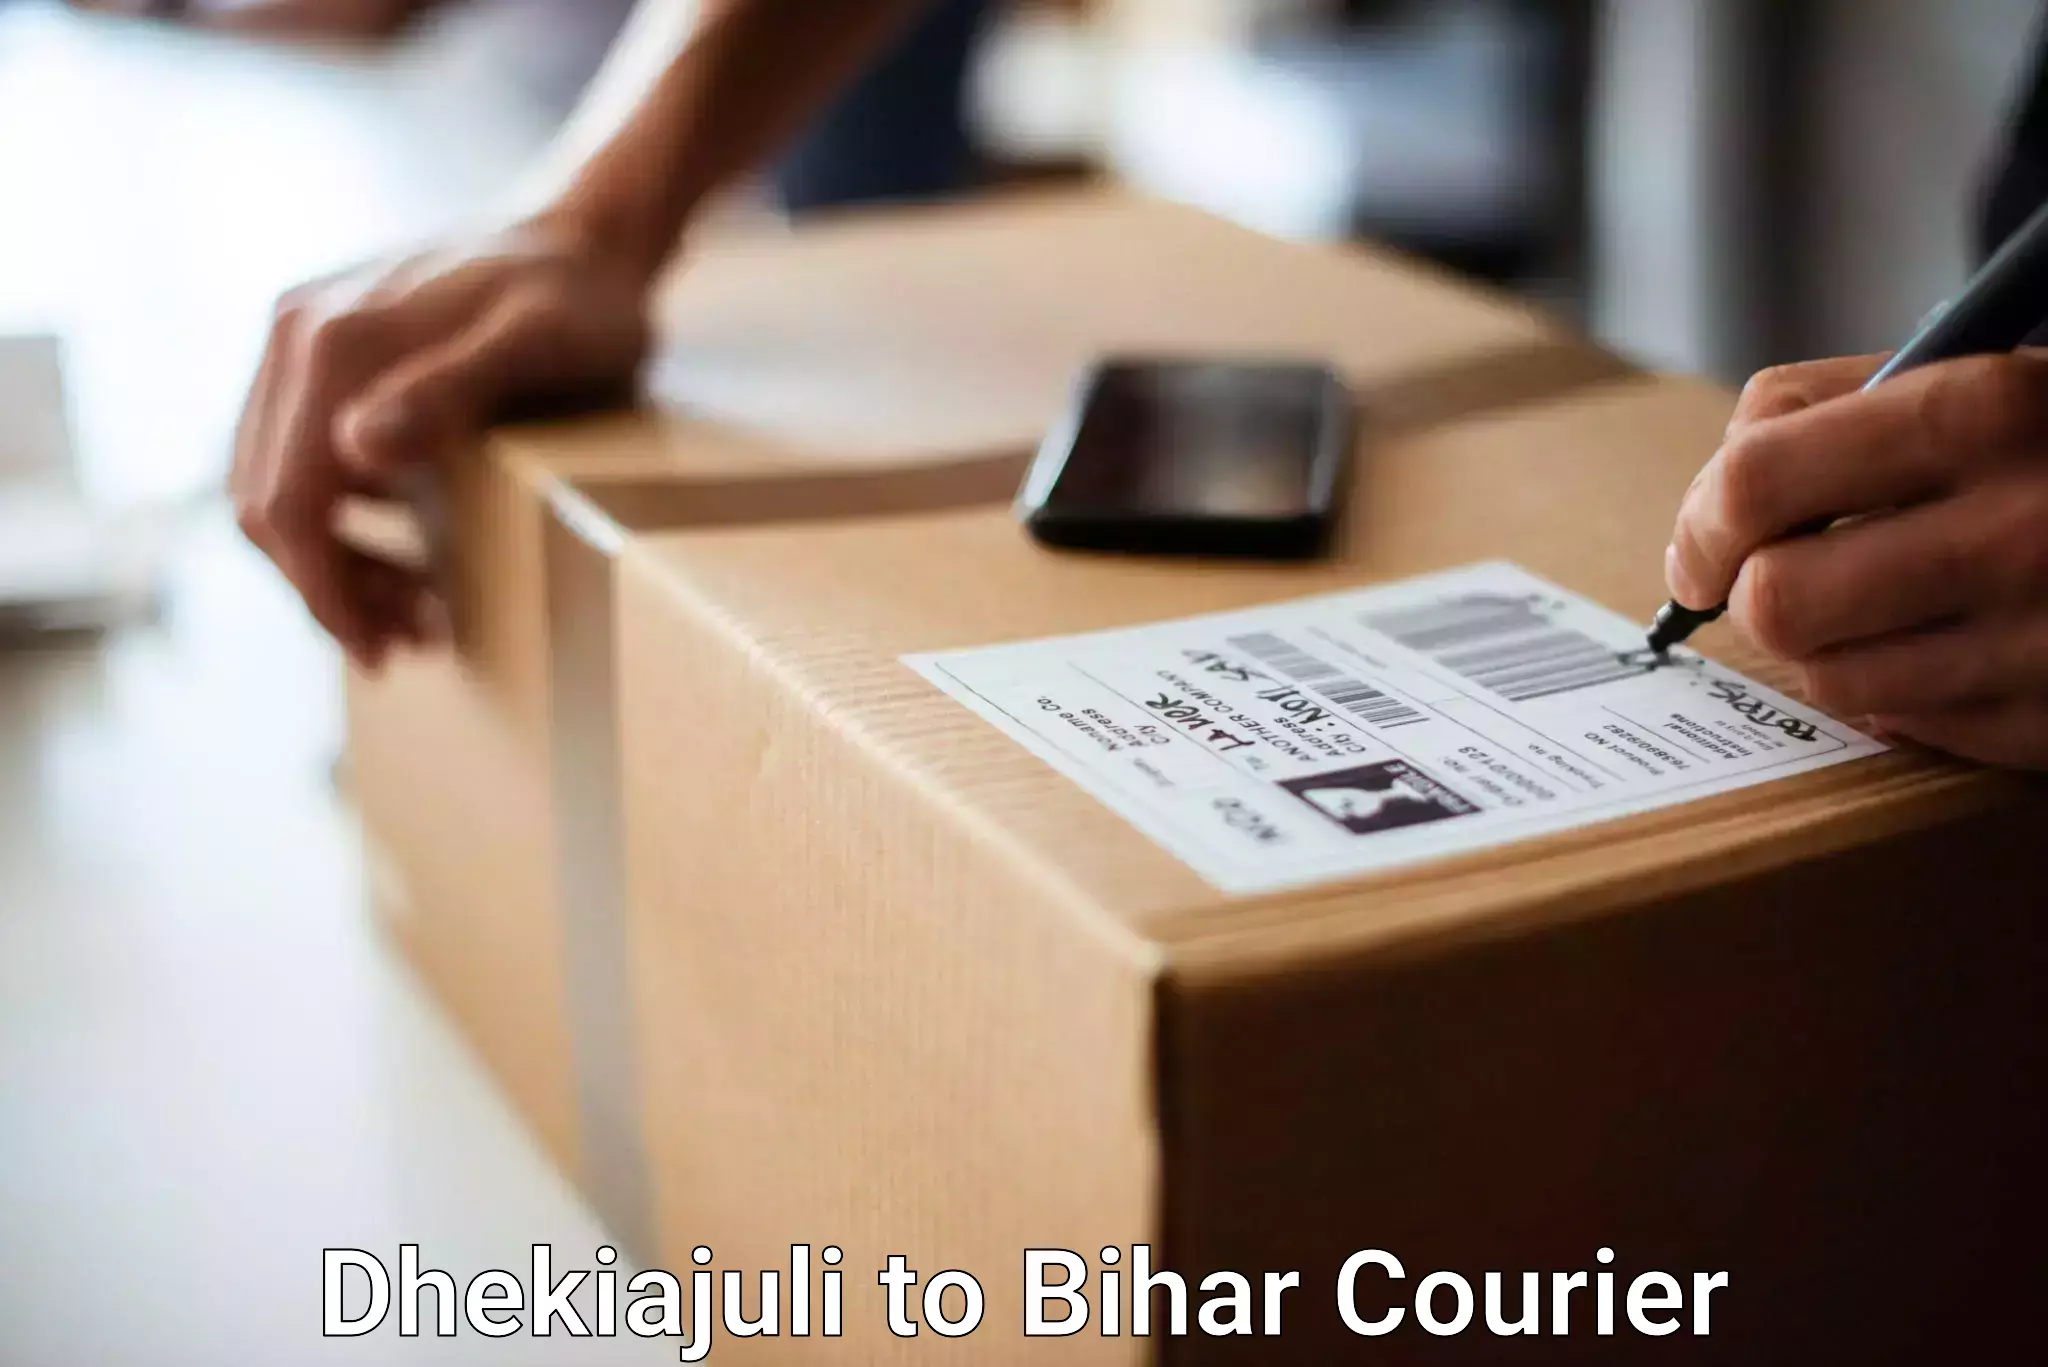 Hassle-free luggage shipping Dhekiajuli to Patna